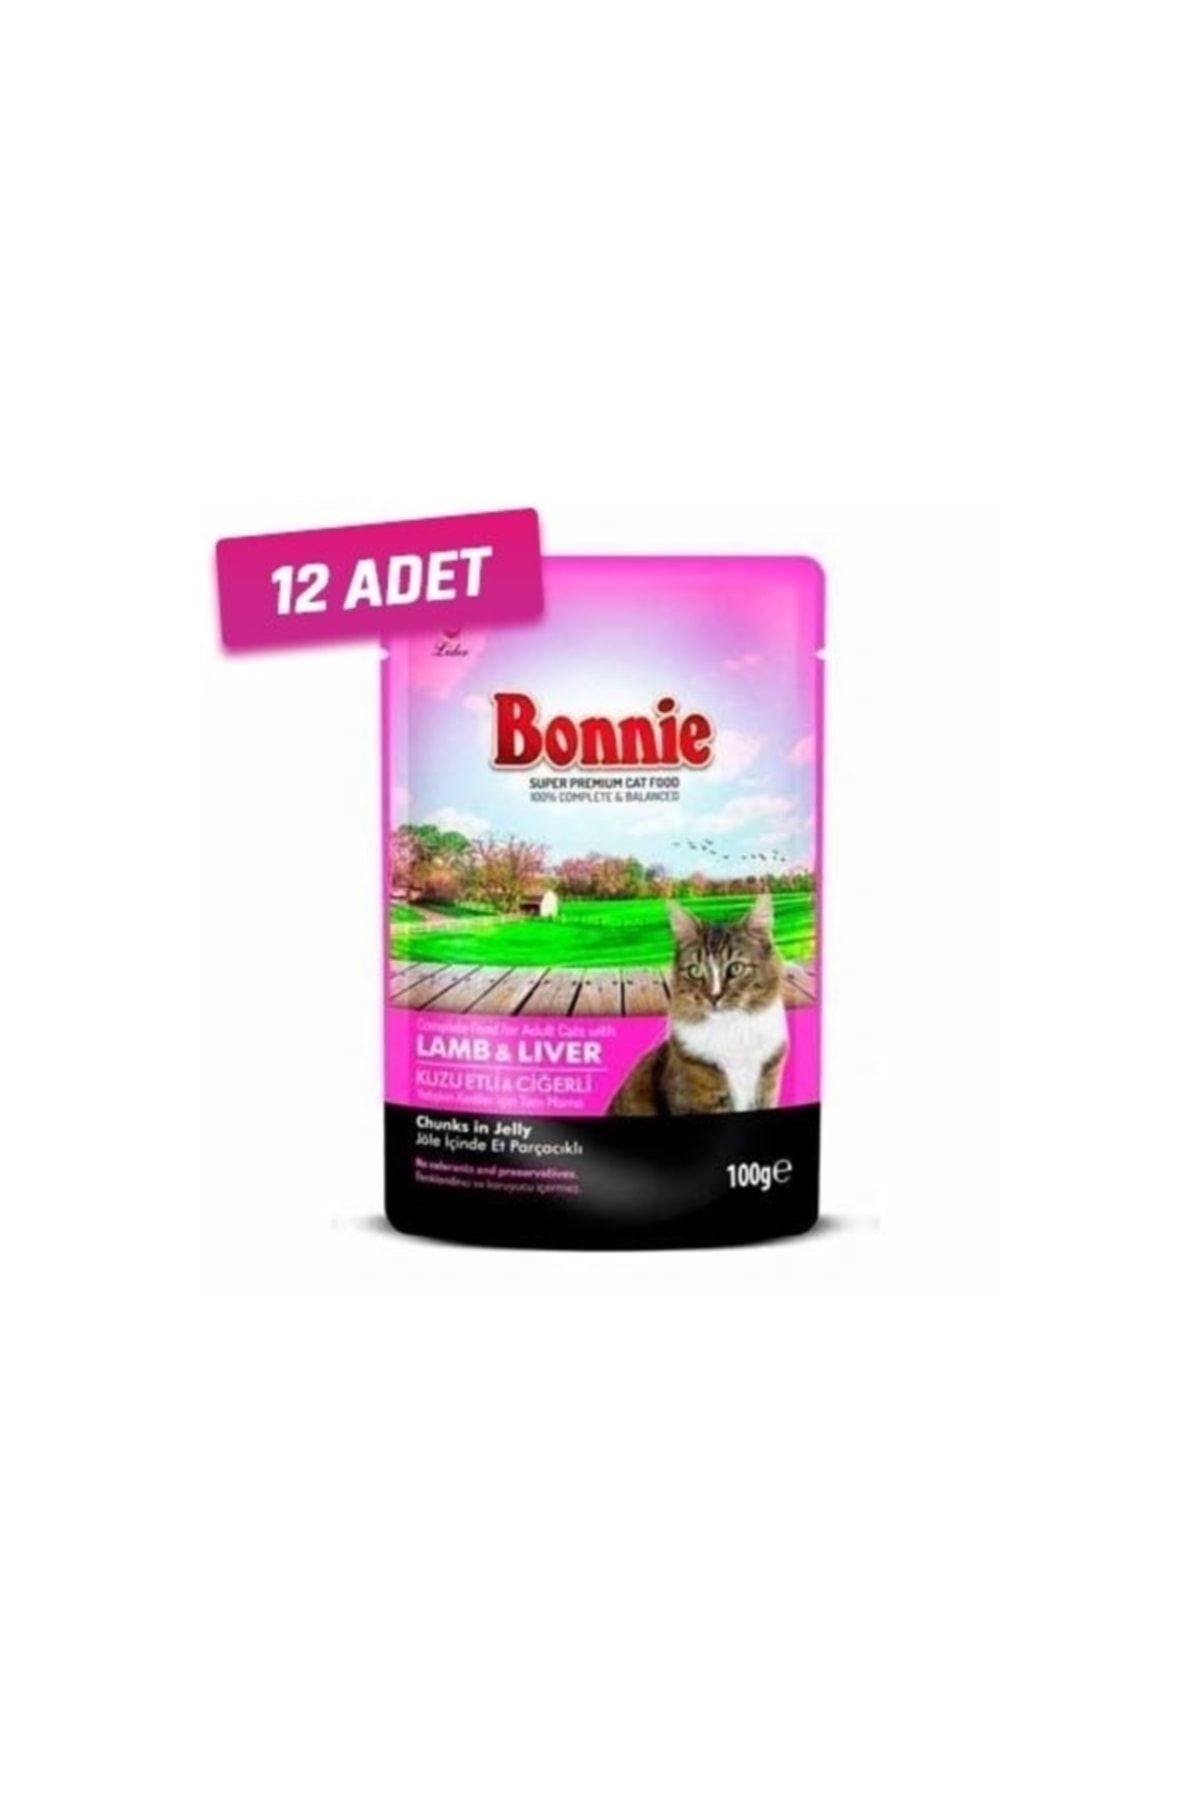 Bonnie 12 Adet - Kuzu Etli Ve Cigerli Pouch Yetişkin Kedi Konservesi 100 Gr